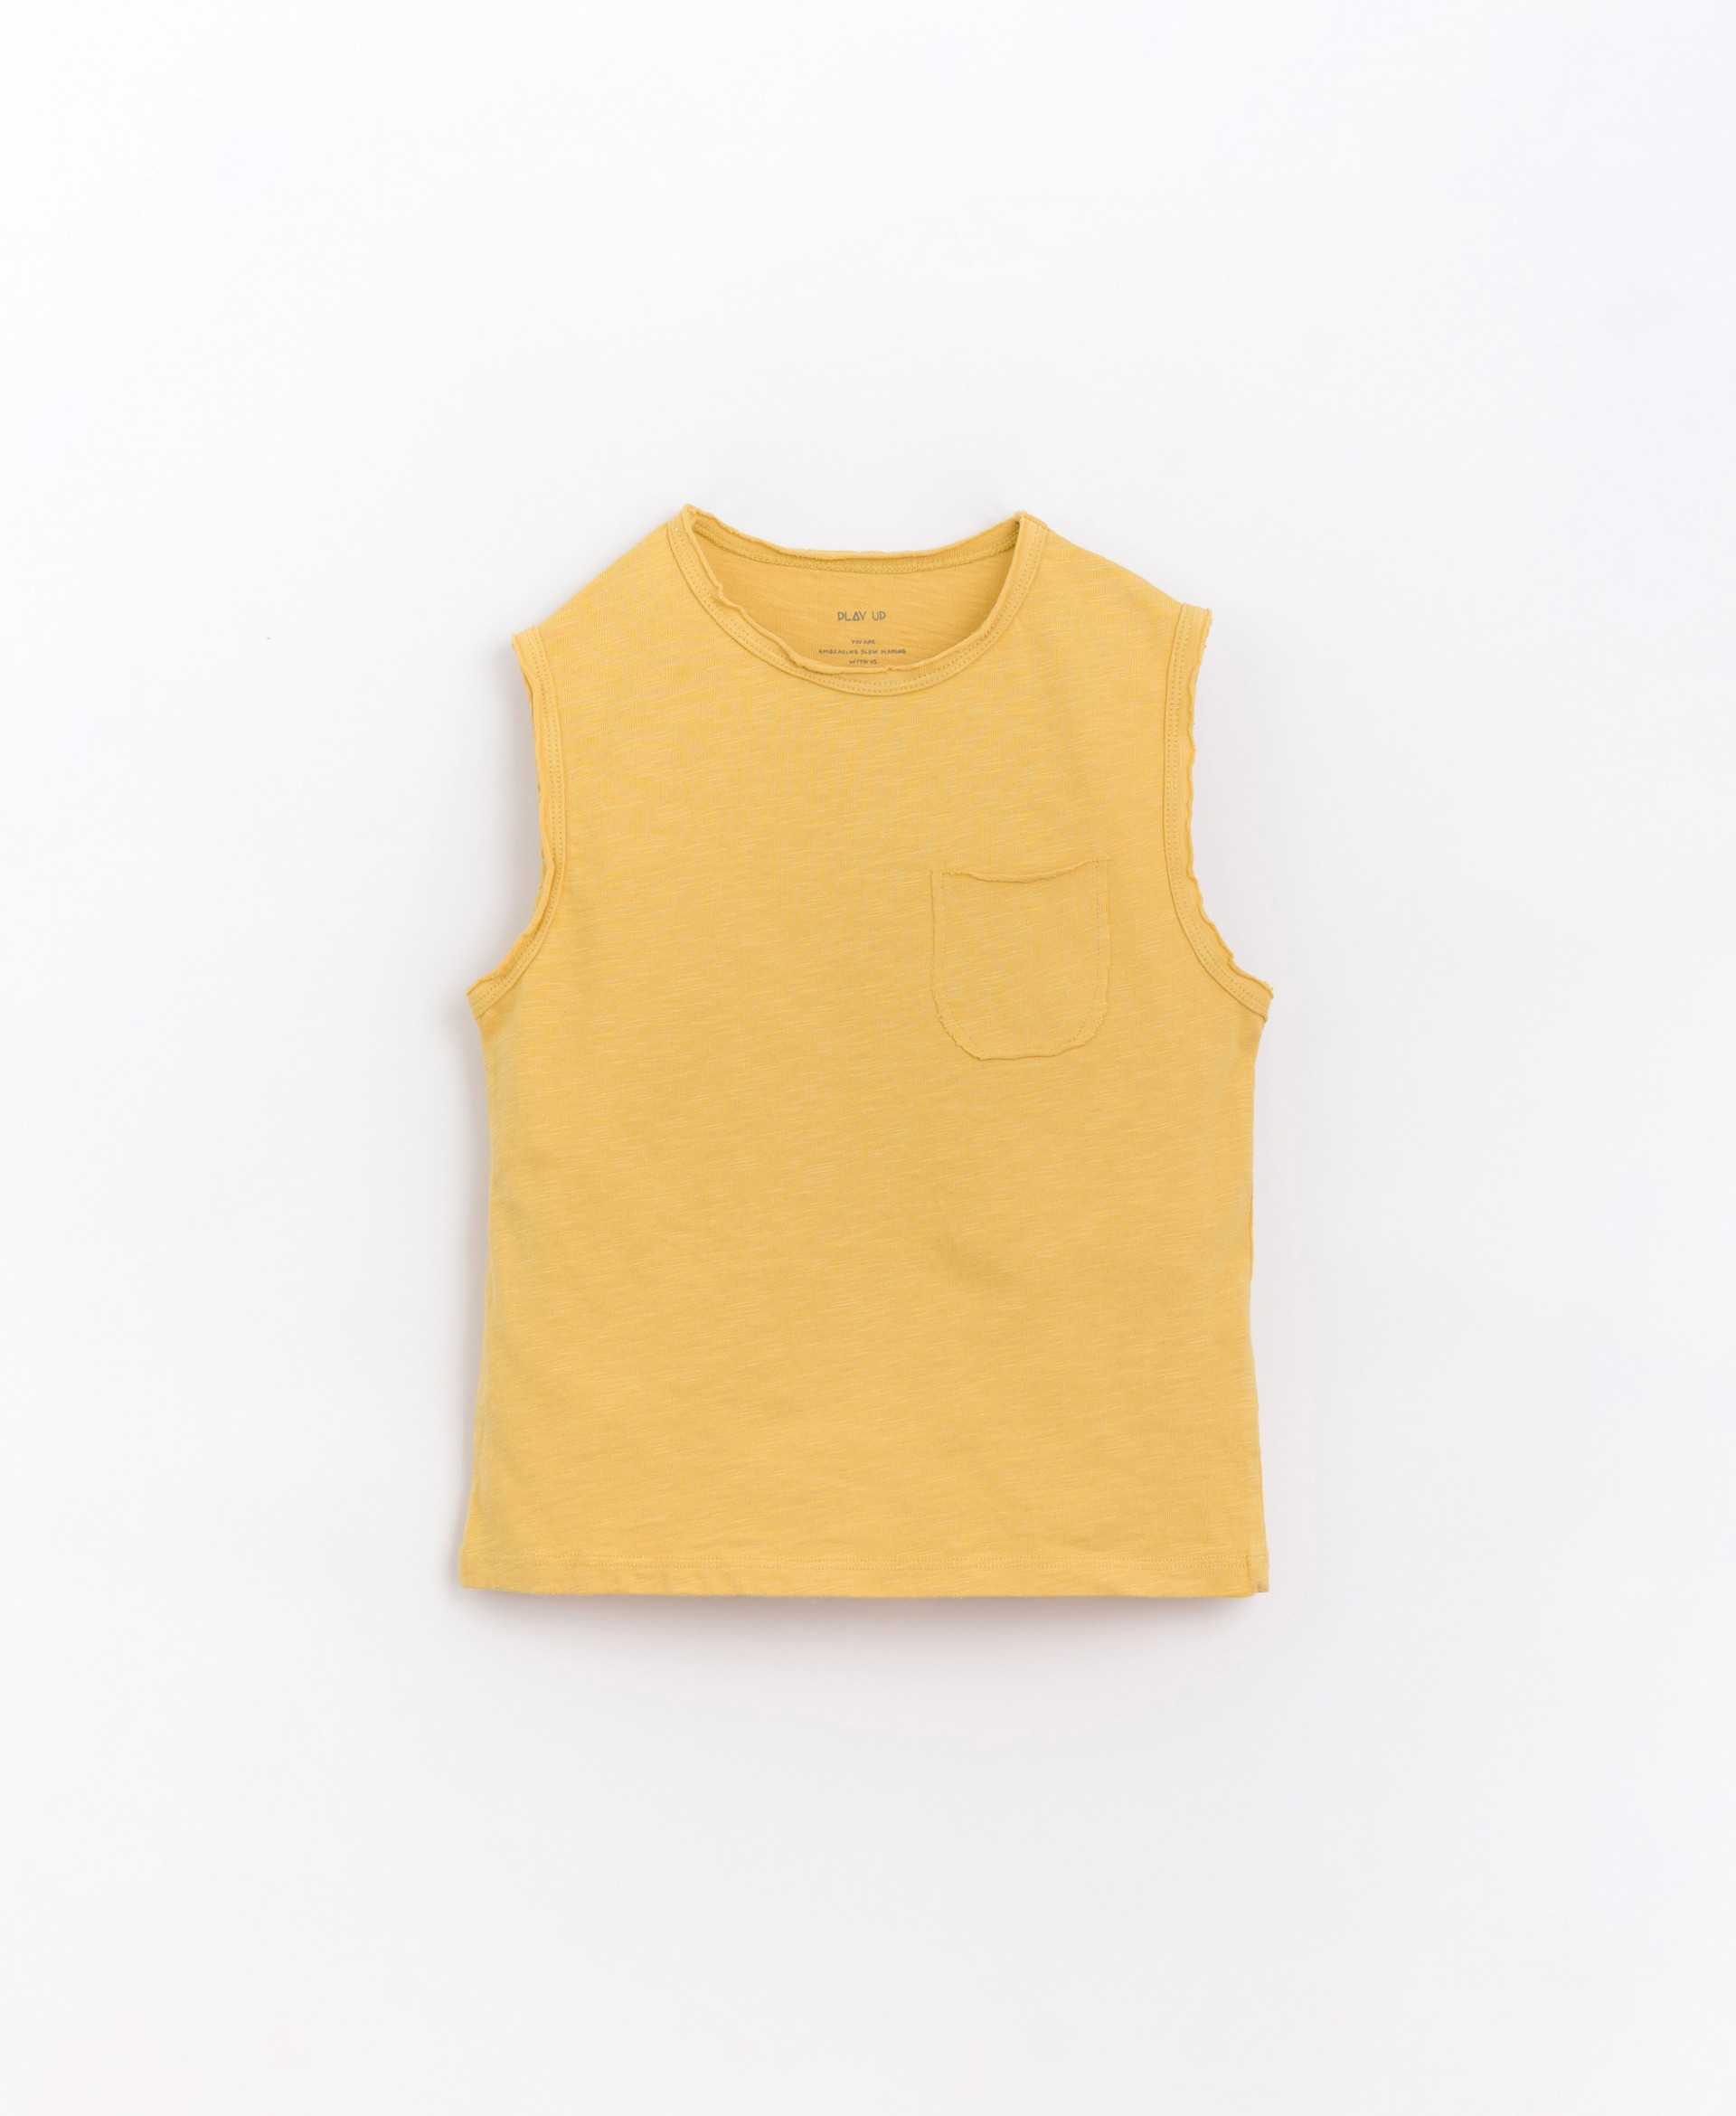 T-shirt sem mangas em algodão orgânico | Basketry